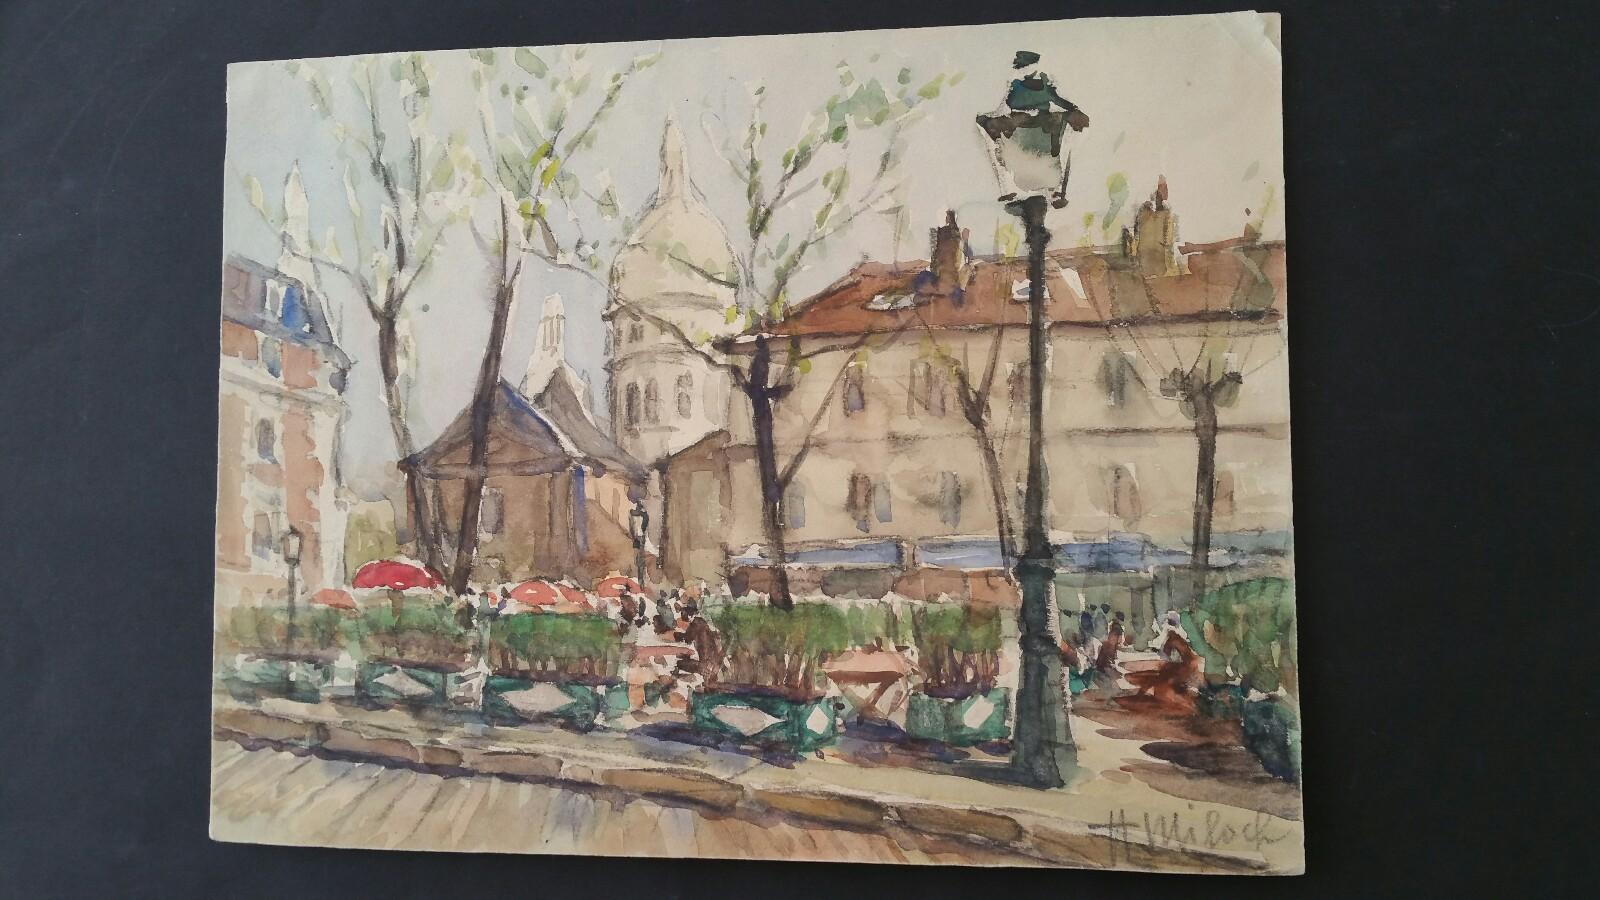 Ecole de Paris Mid 20th Century Place du Tertre and Sacre Coeur  - Painting by Henri Miloch